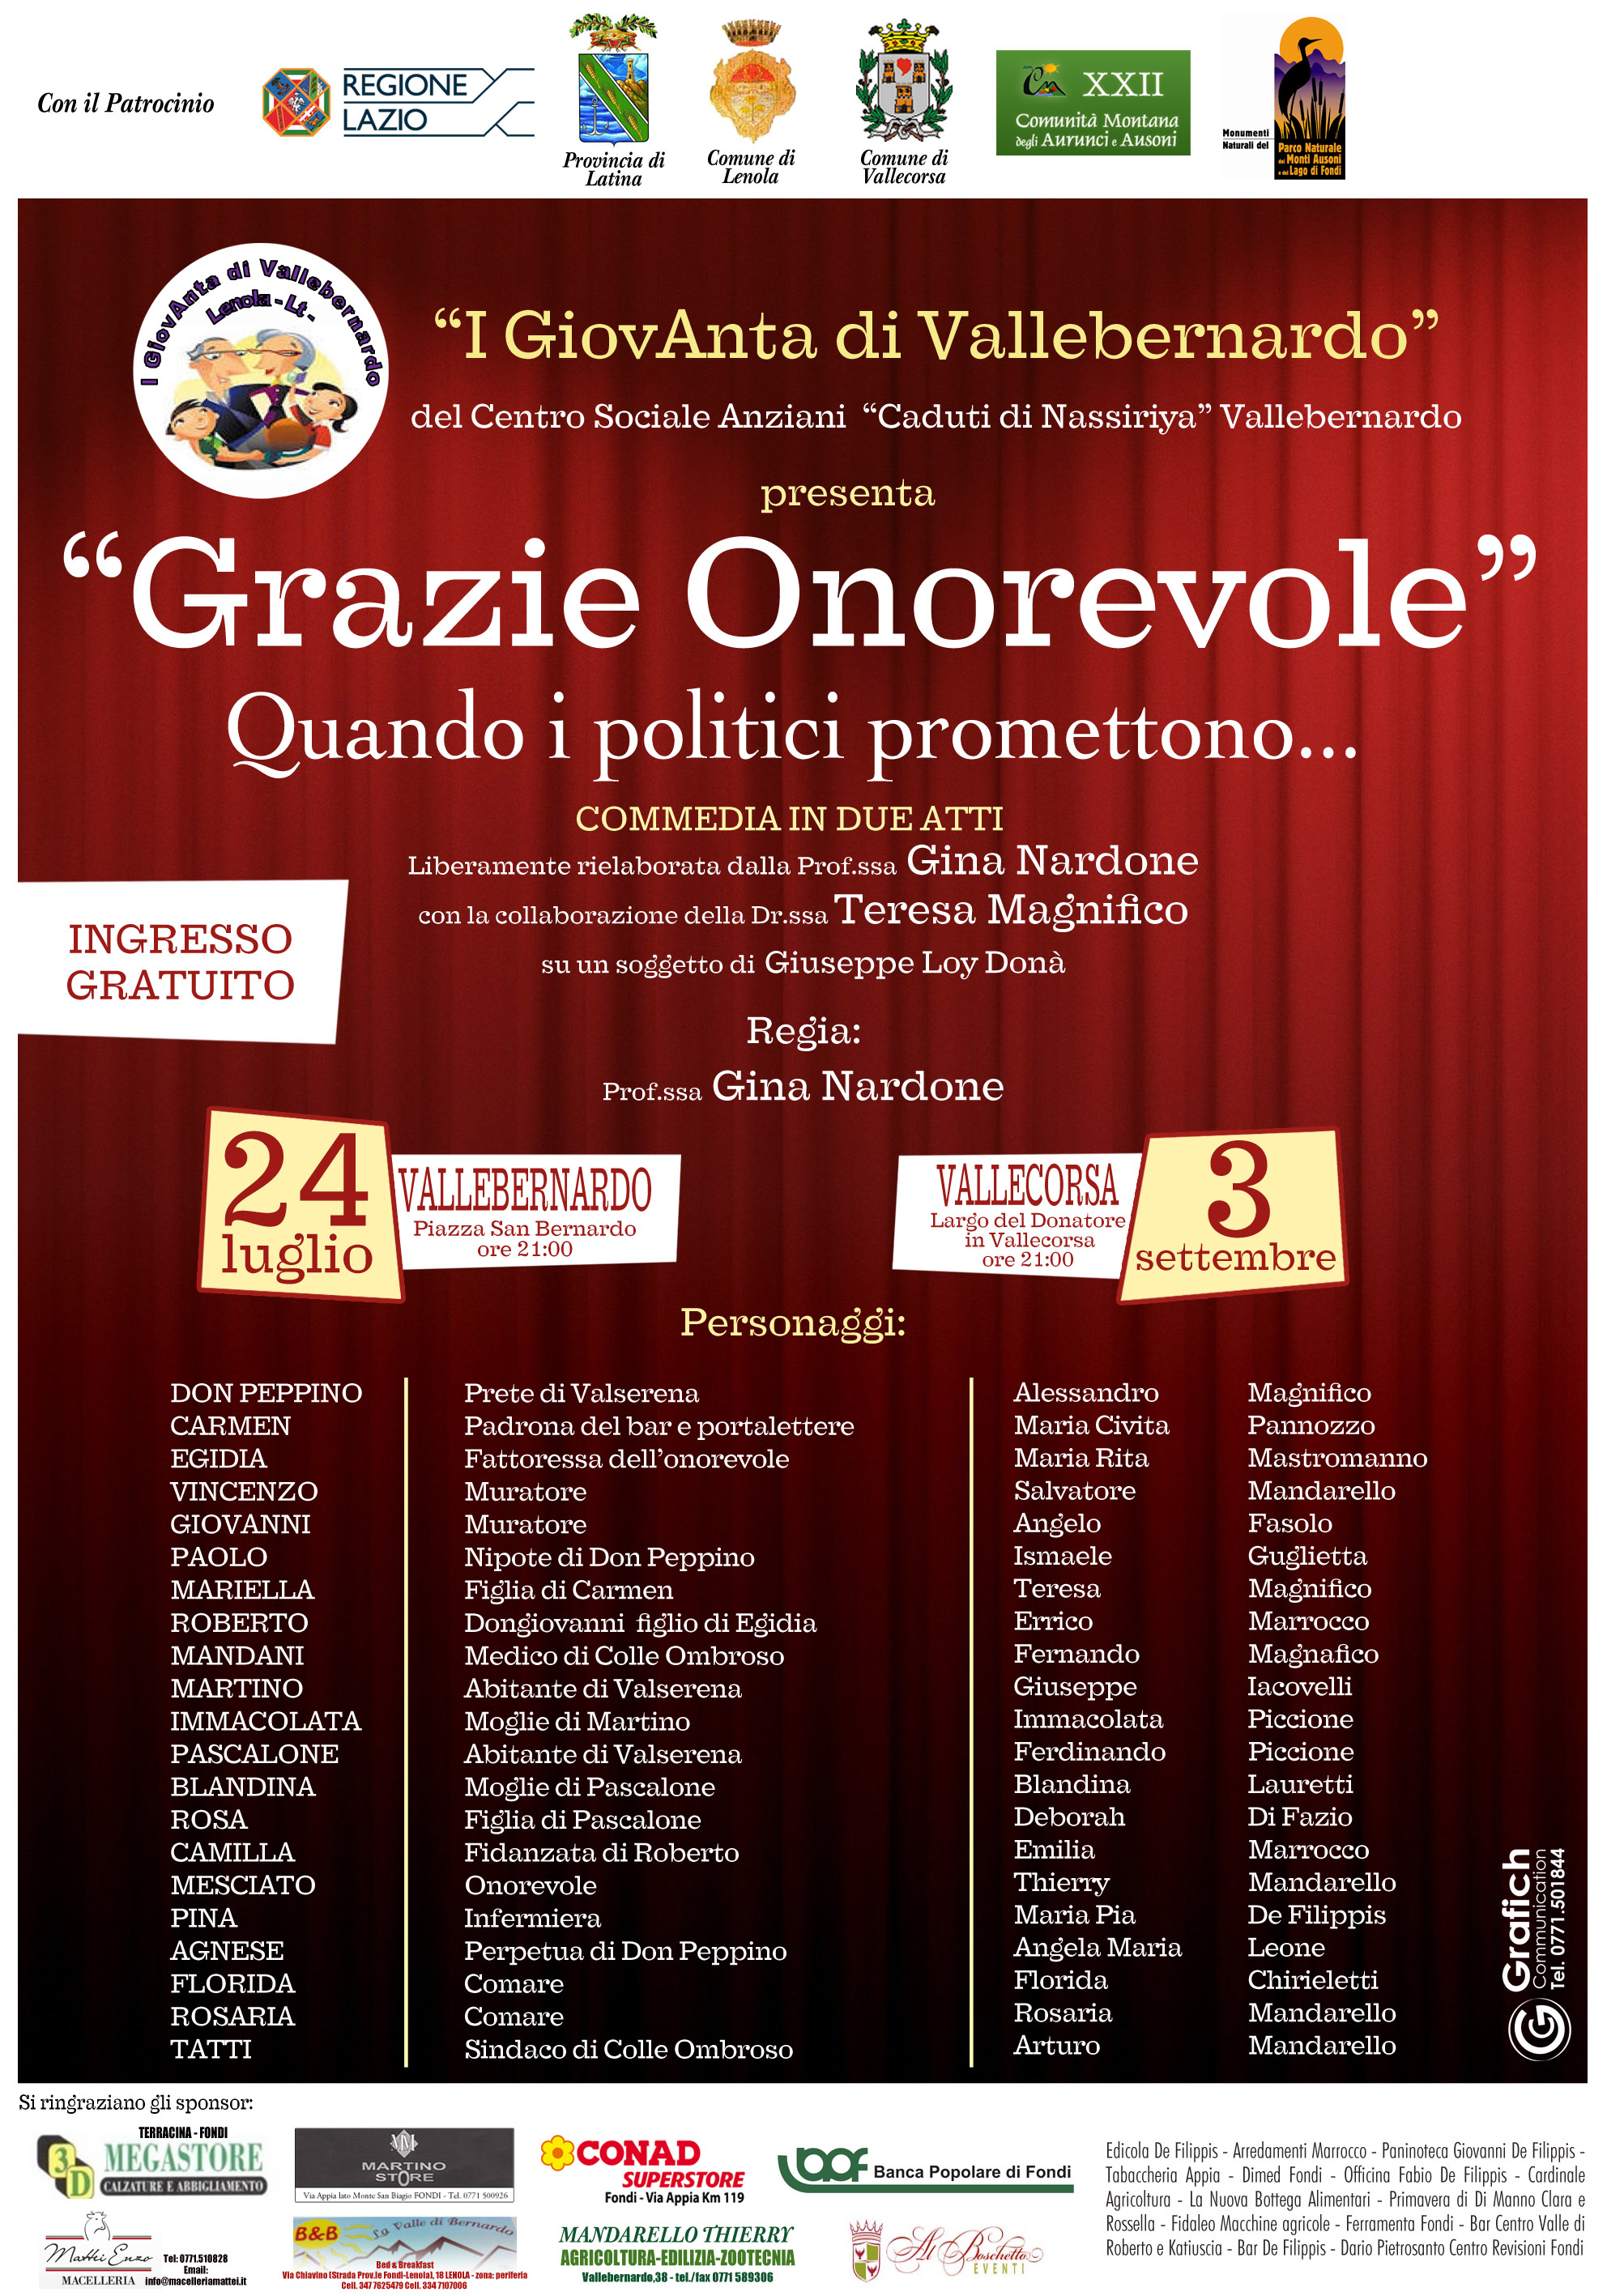 Locandina ''Grazie Onorevole'' - commedia 2016 Centro Sociale Anziani Vallebernardo Lenola